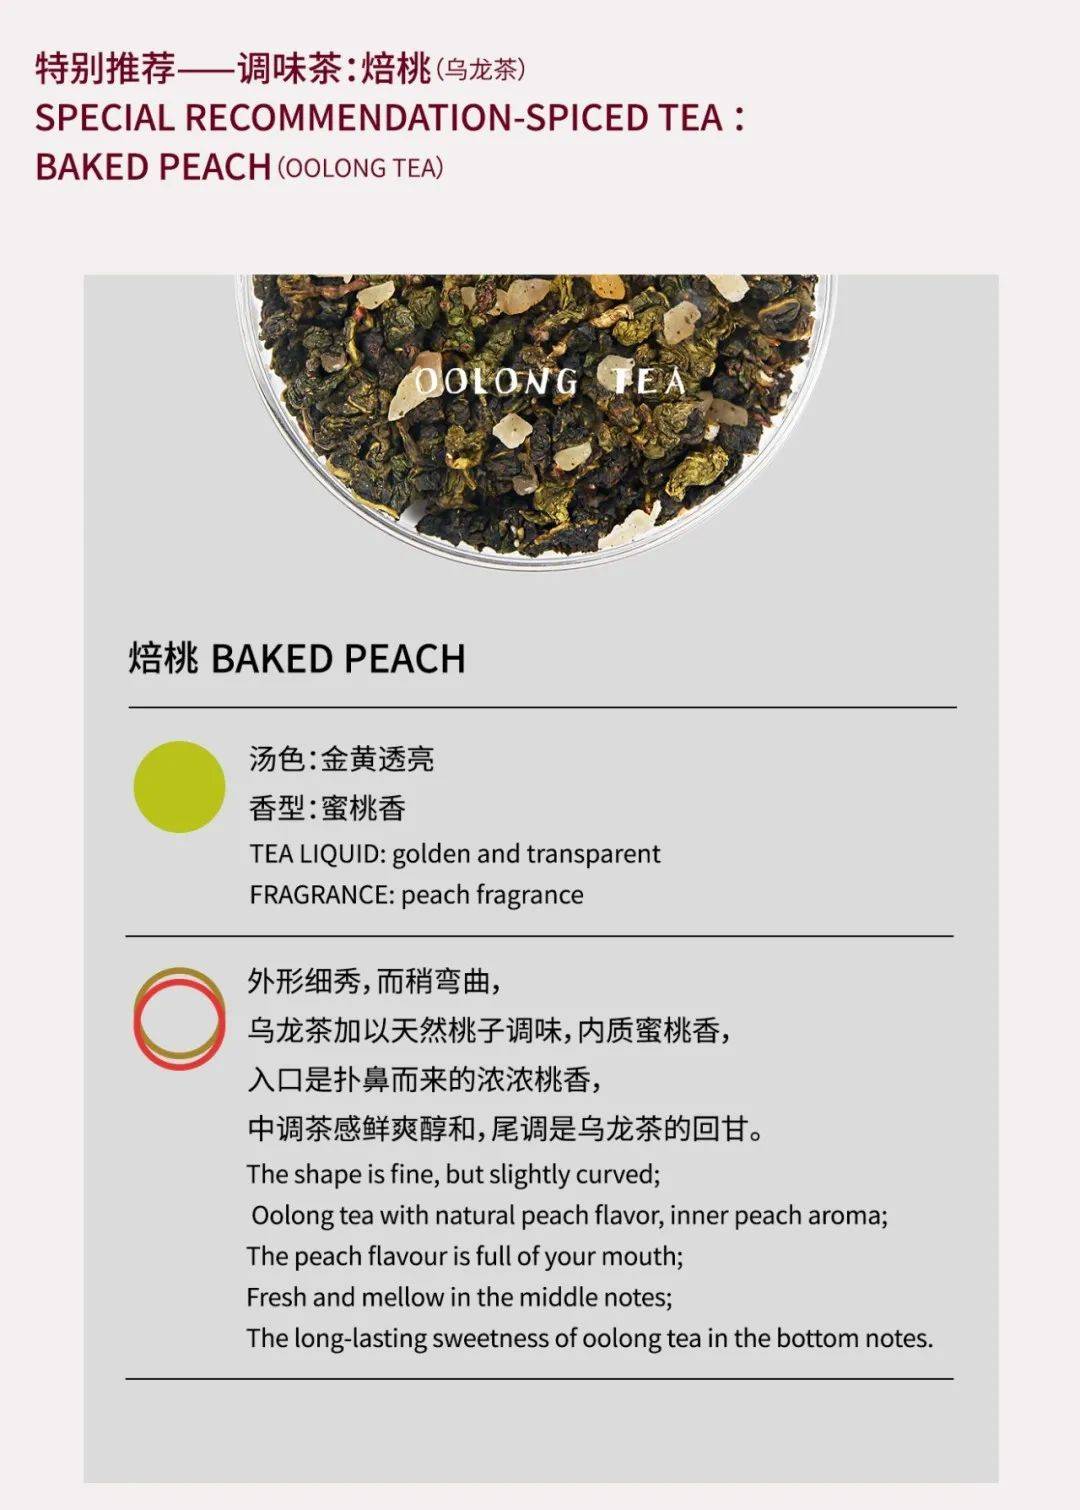 引领茶饮行业趋势 本周广州展有这些亮点